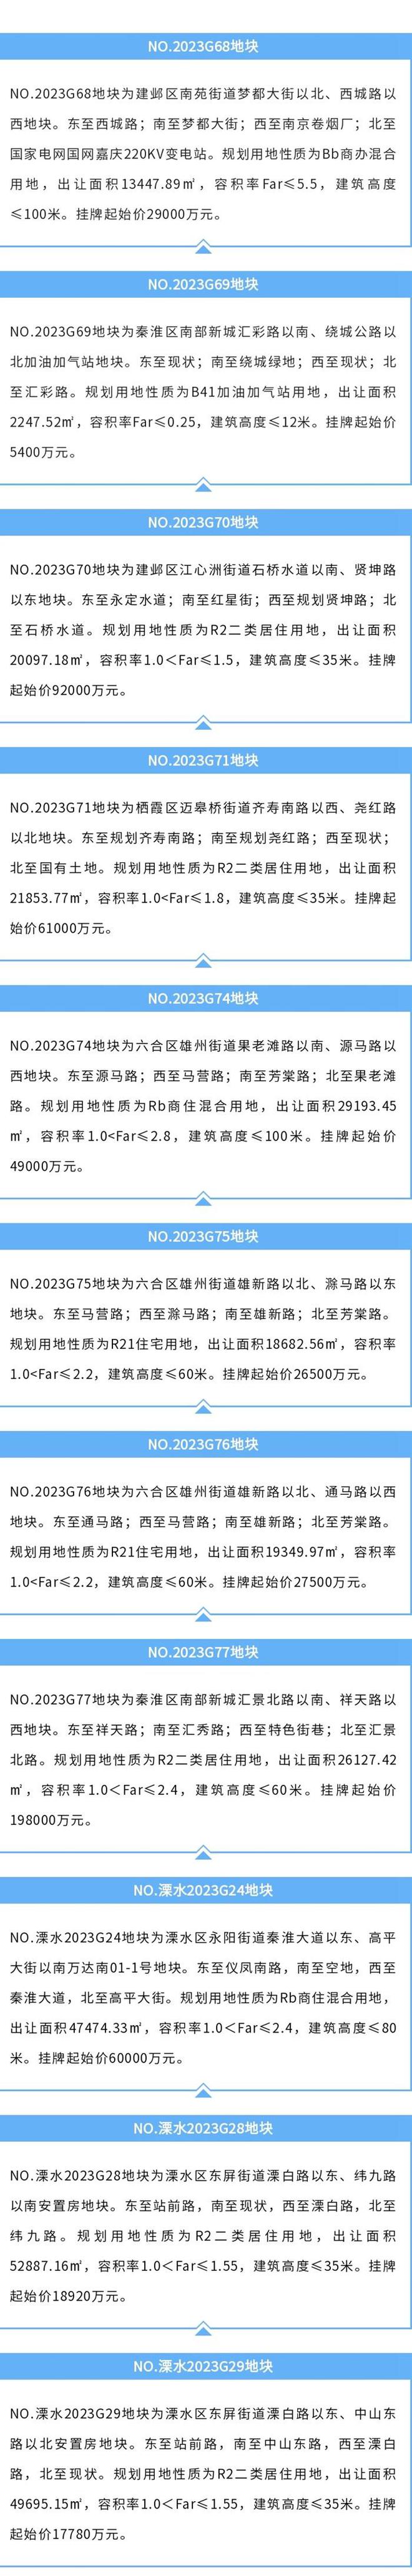 南京新推出9幅涉宅地块 取消最高限价改摇号为价高者得